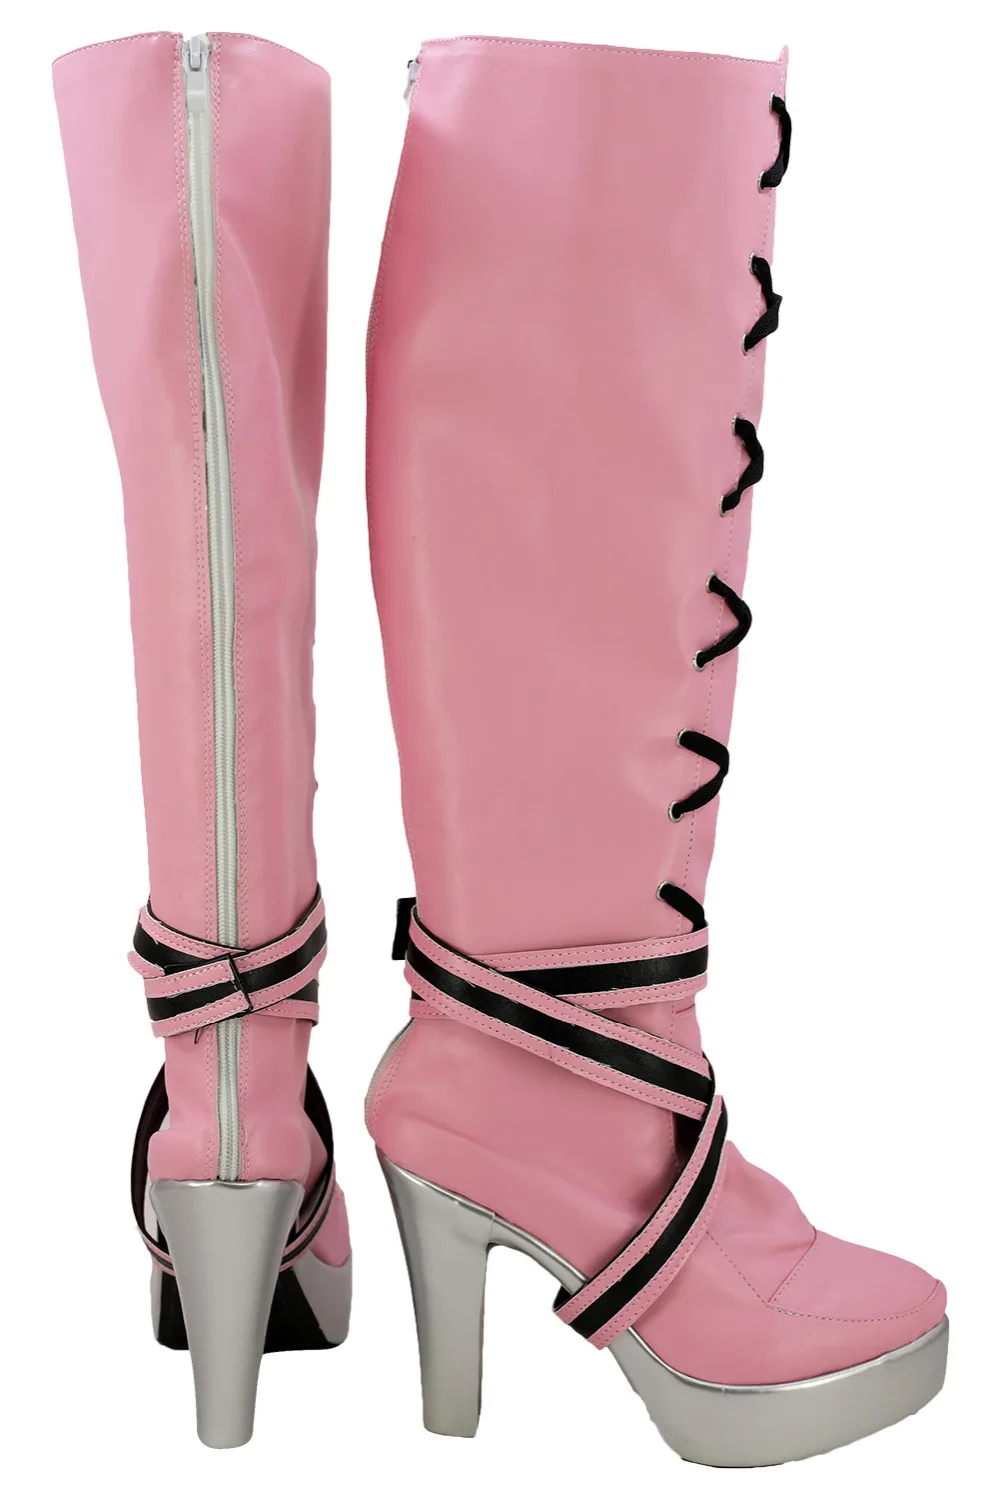 Обувь для костюмированной вечеринки «Монстр Хай Дракулаура»; ботинки для взрослых на Хэллоуин; карнавальный костюм; обувь для костюмированной вечеринки на заказ; европейский размер